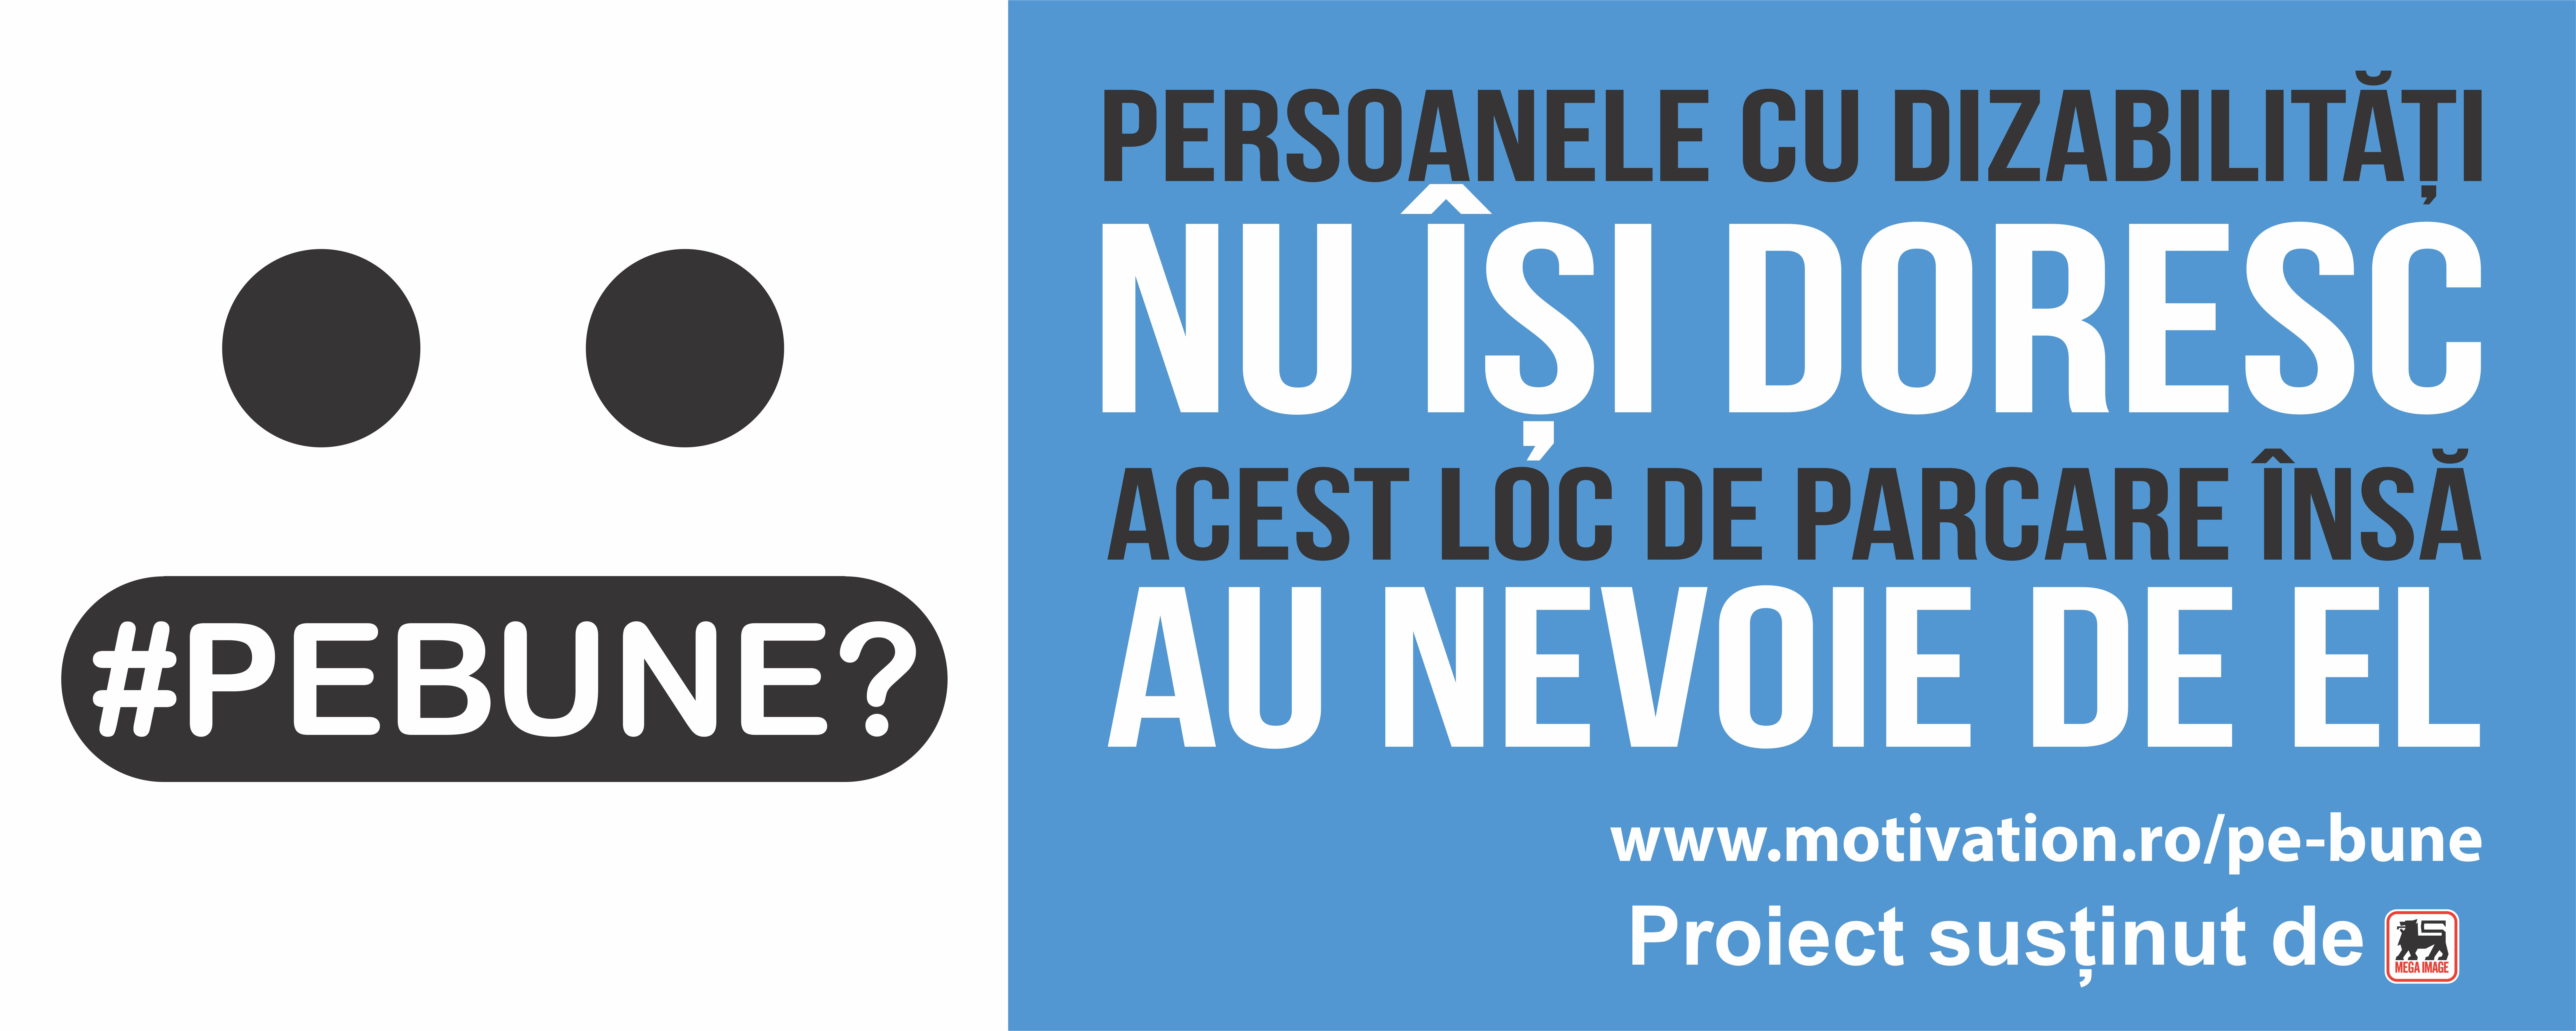 Dizabillove, primul site de intalniri dedicat persoanelor cu dizabilitati din Romania